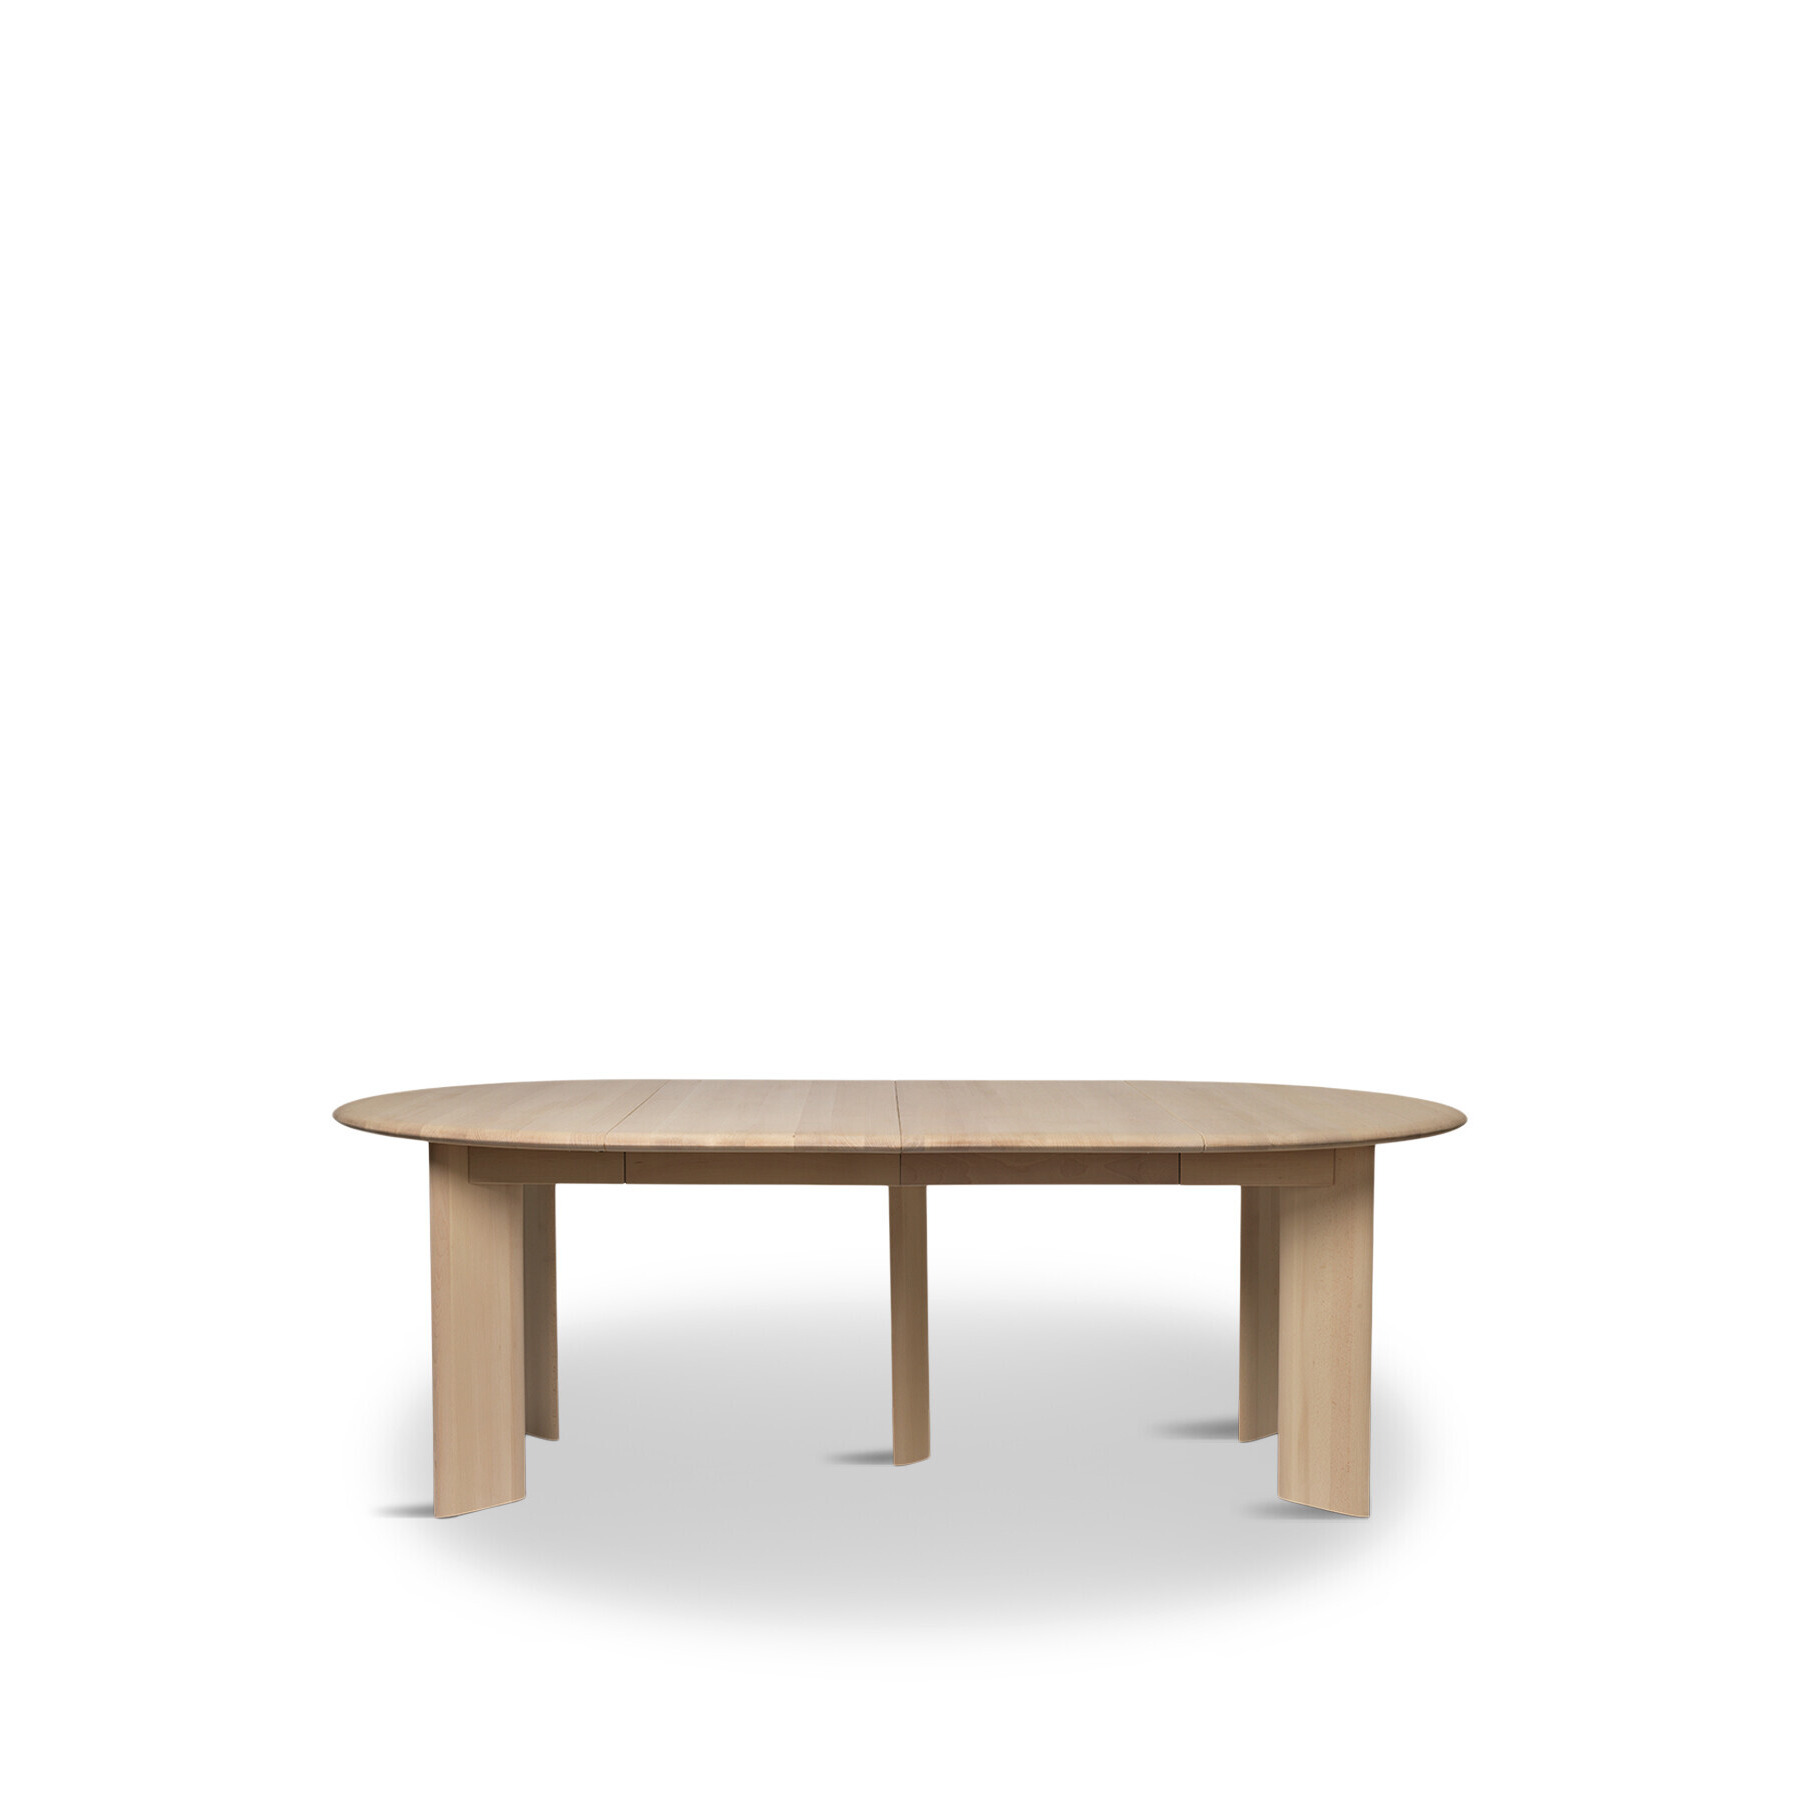 Ferm living Bevel Table Extend x 2 - White Oiled Oak - image 1